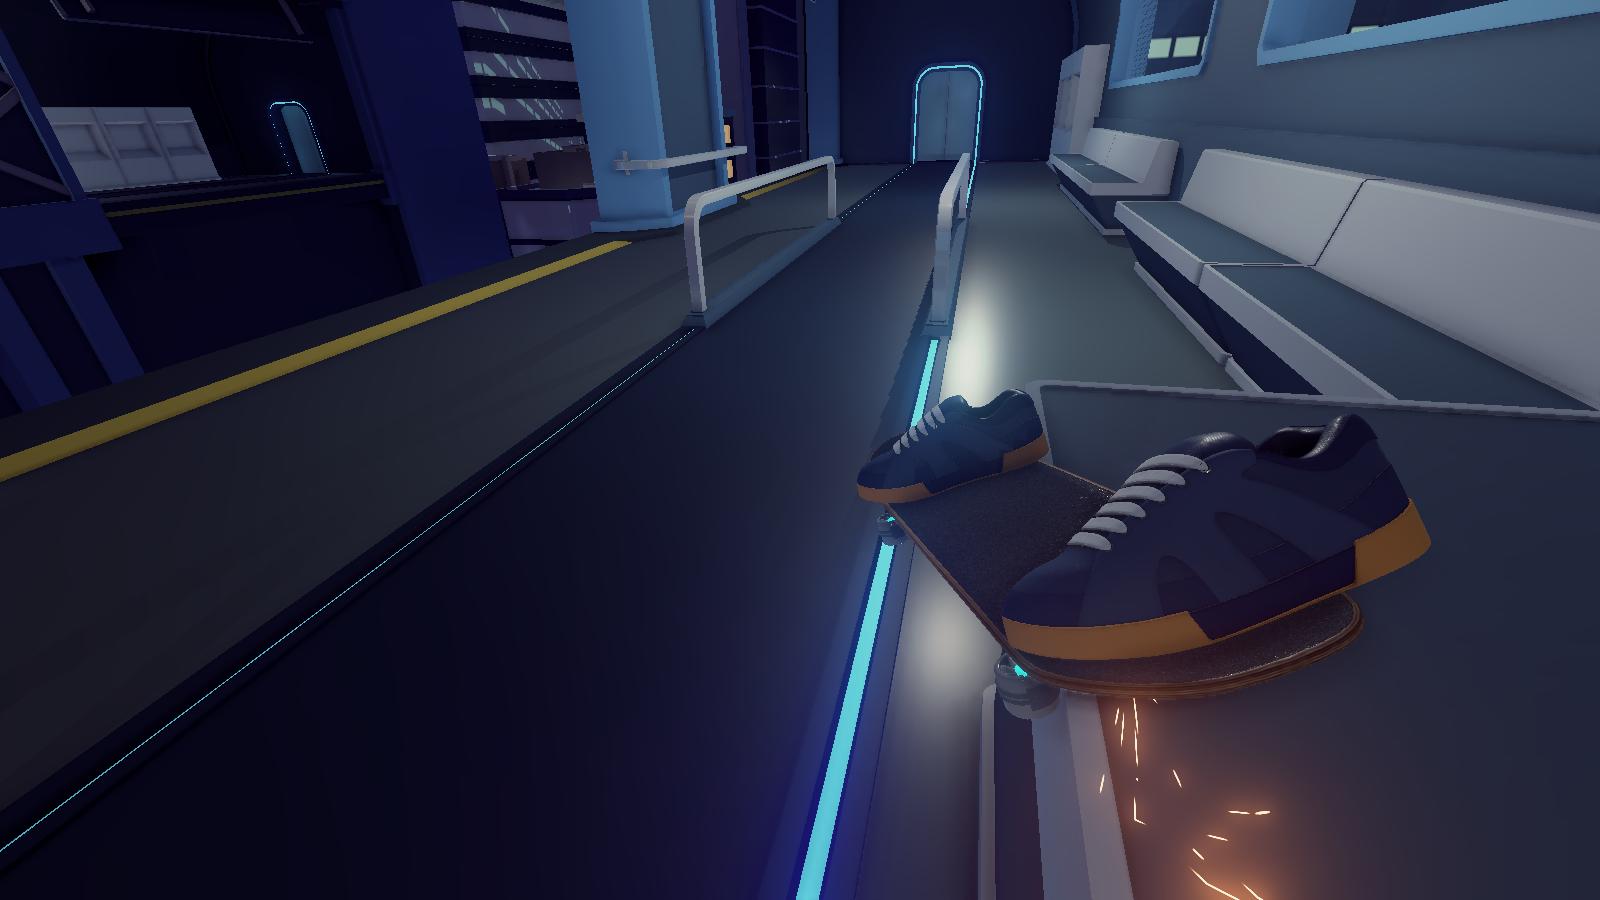 VR Skater on Steam